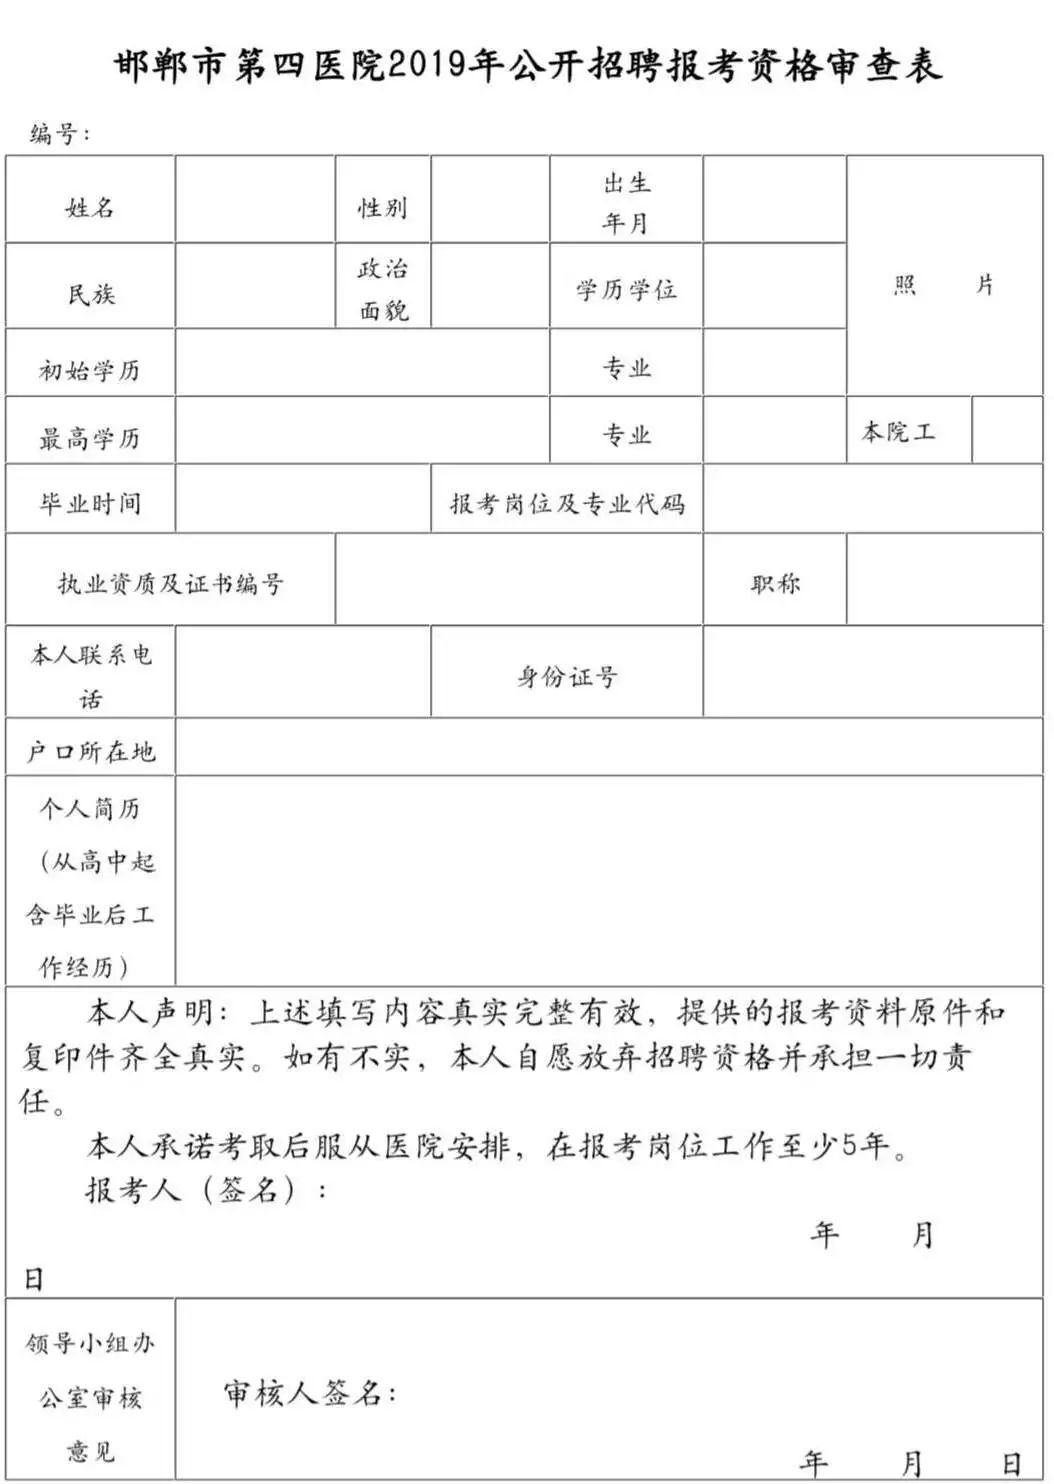 有编制,河北省卫生系统公开招聘122名工作人员,别错过